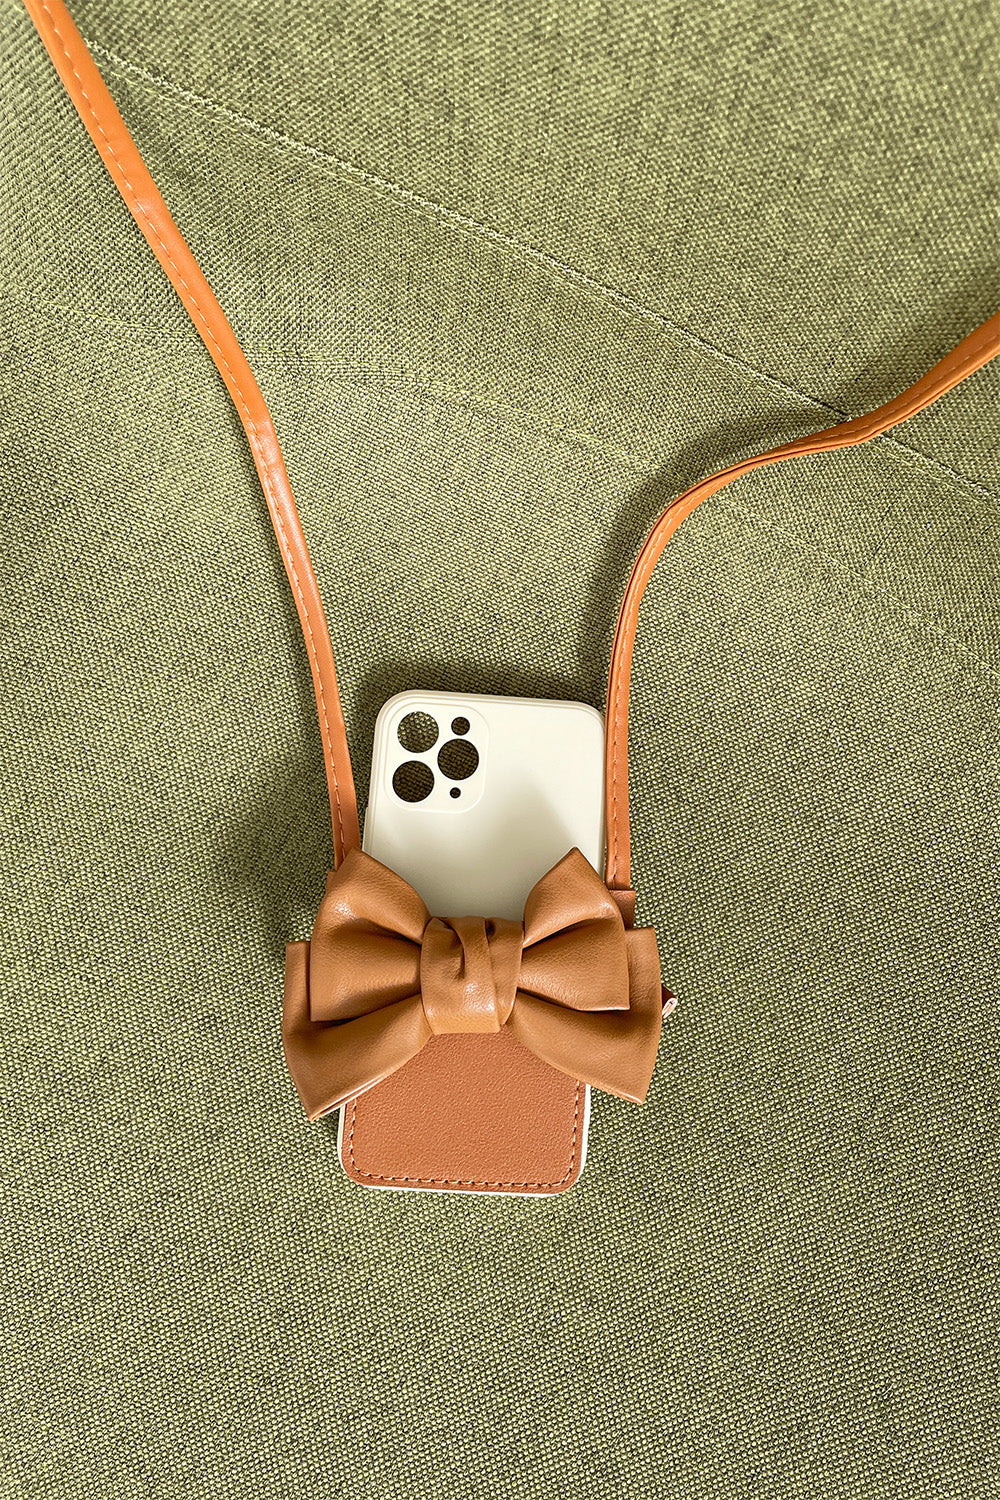 Leather ribbon cross bag iPhone case(レザーリボンクロスバッグアイフォンケース)